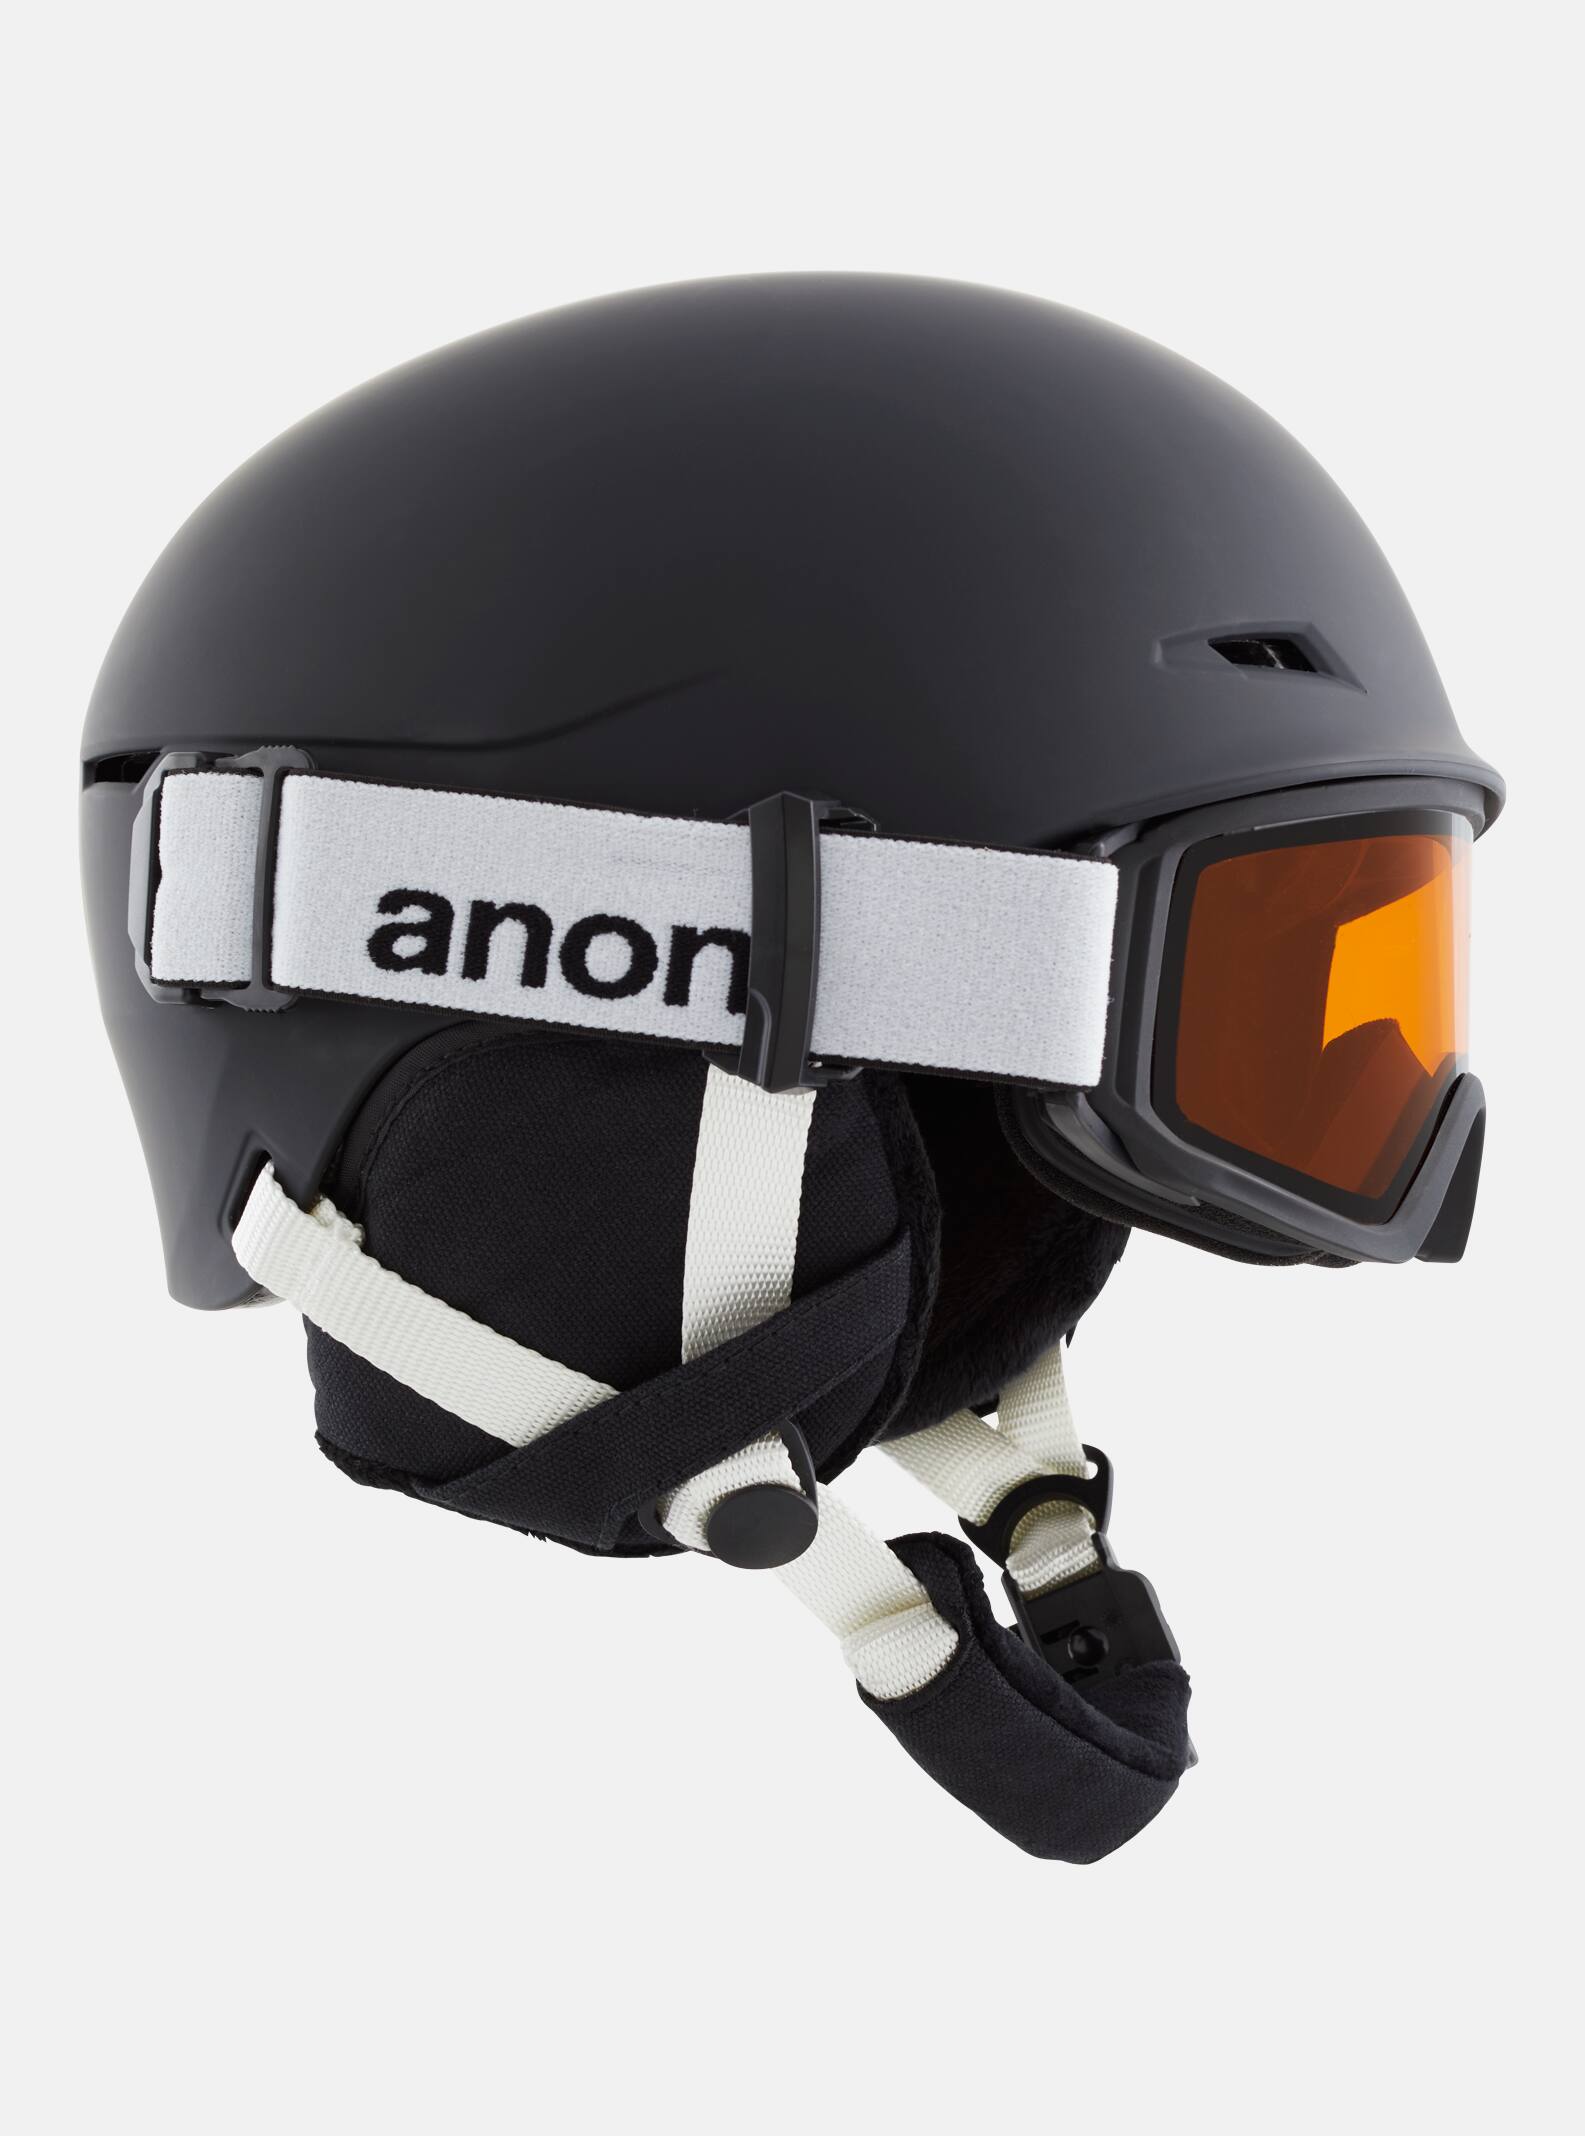 Anon - Combinaison casque/masque Define de ski et snowboard enfant, Black, SM